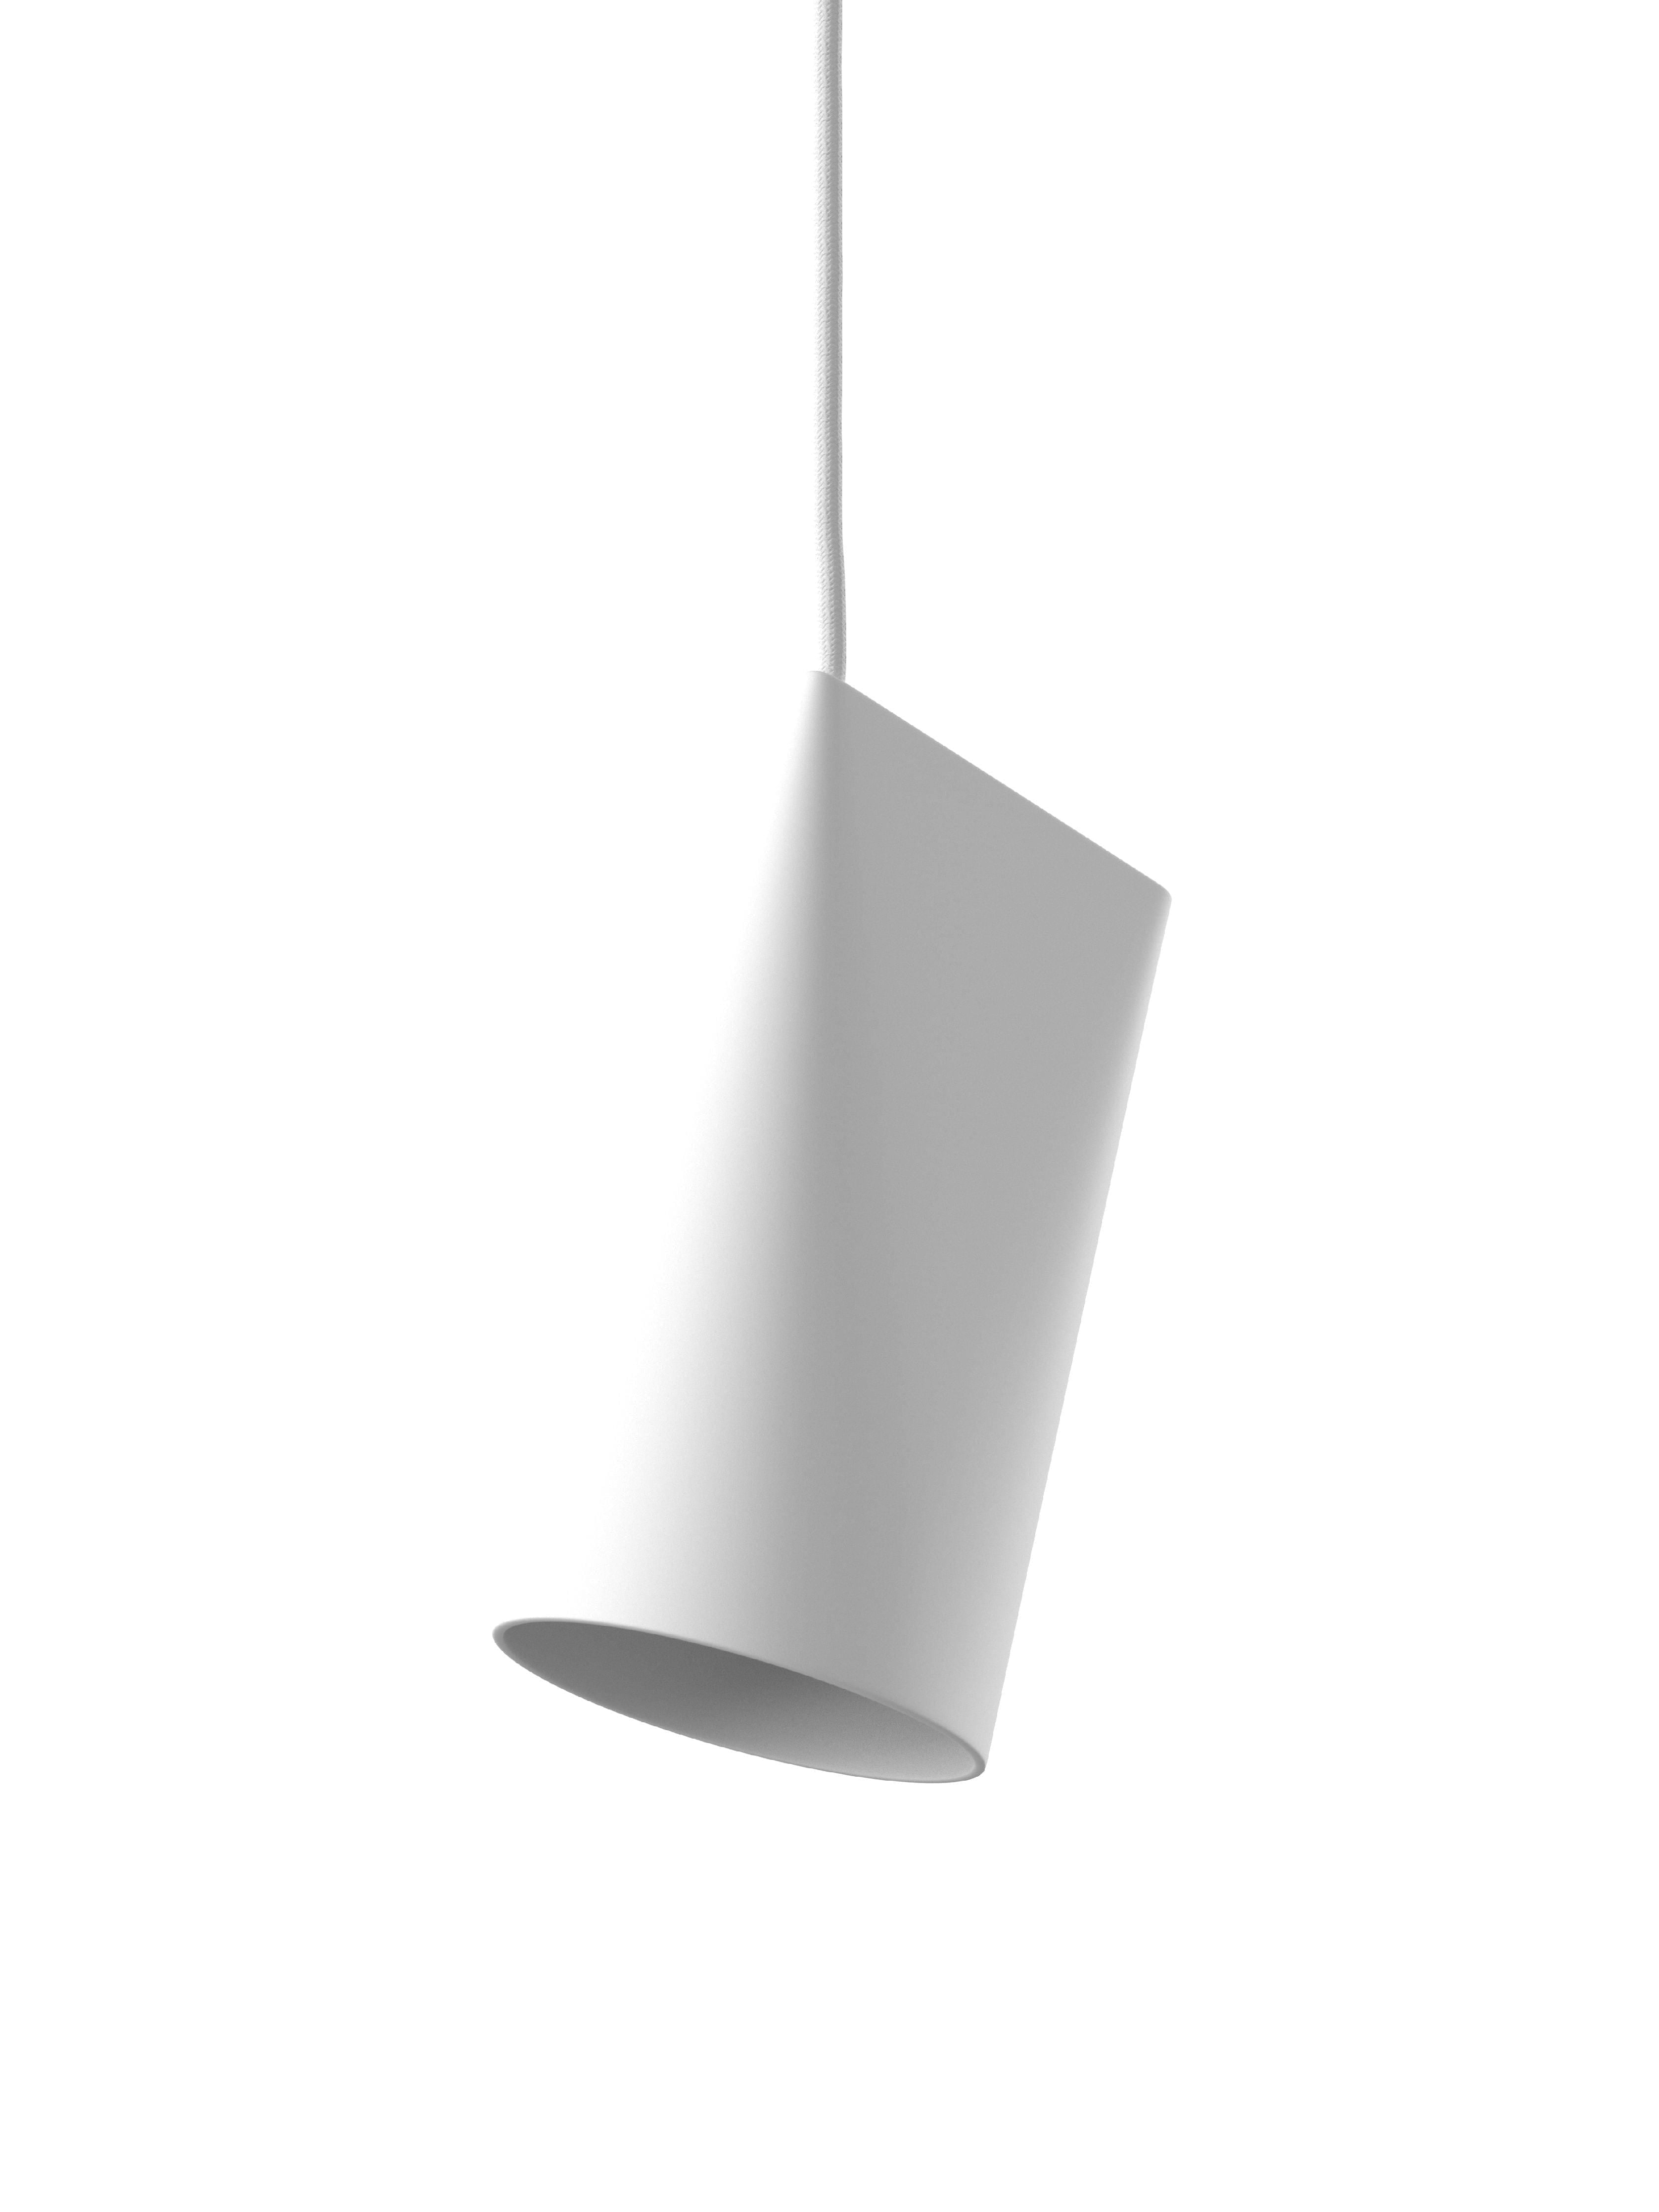 Moebe -Keramik -Anhänger -Lampe 11 cm, weiß